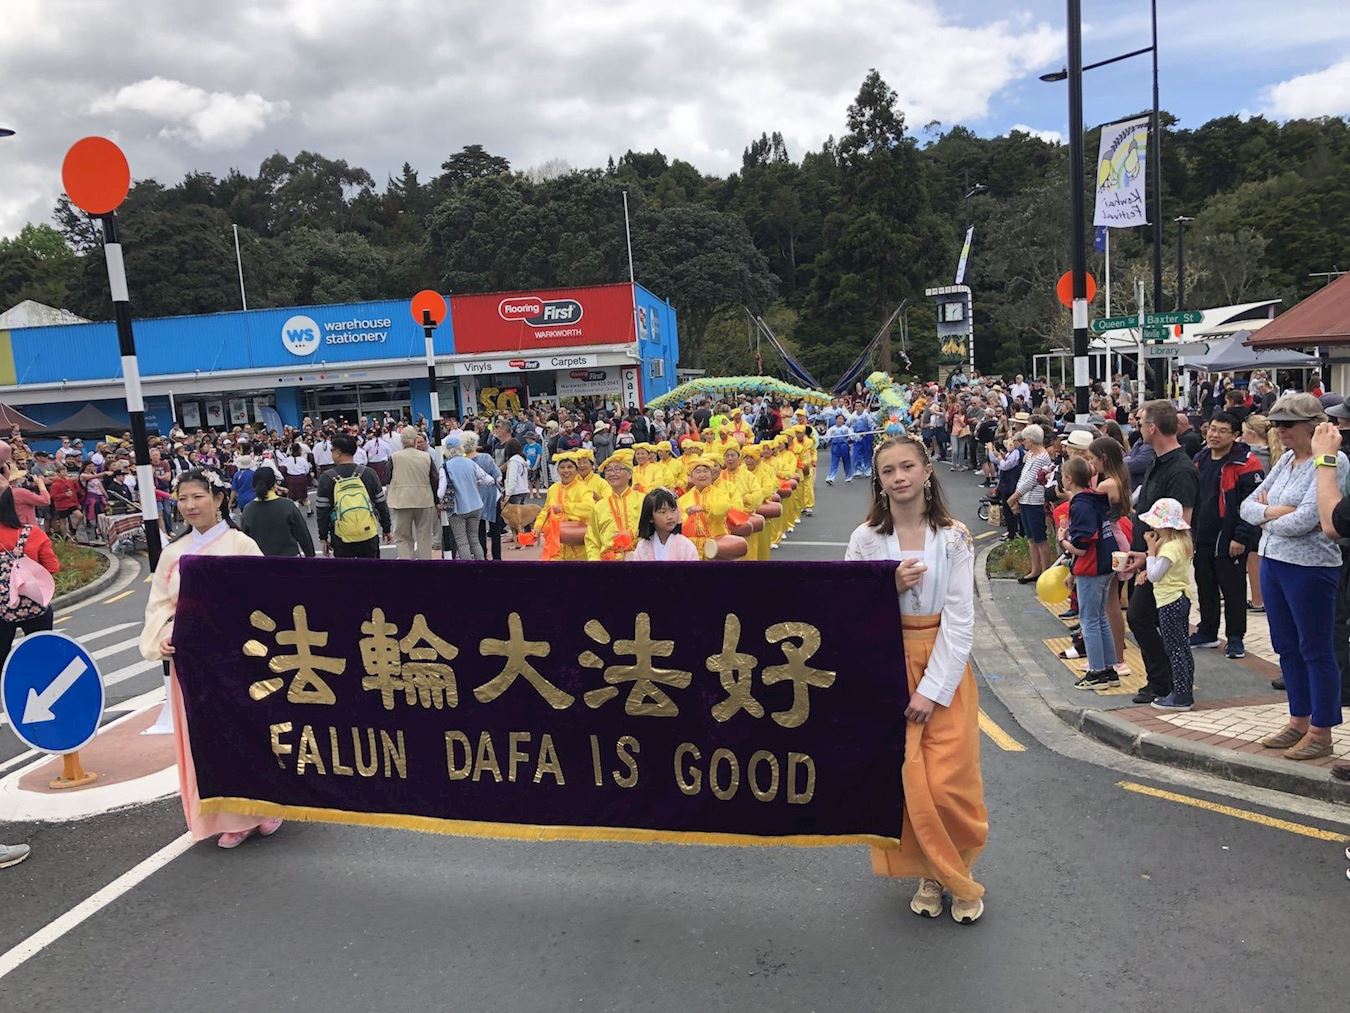 Image for article Nouvelle-Zélande : Les performances du groupe du Falun Gong bien accueillies au festival local